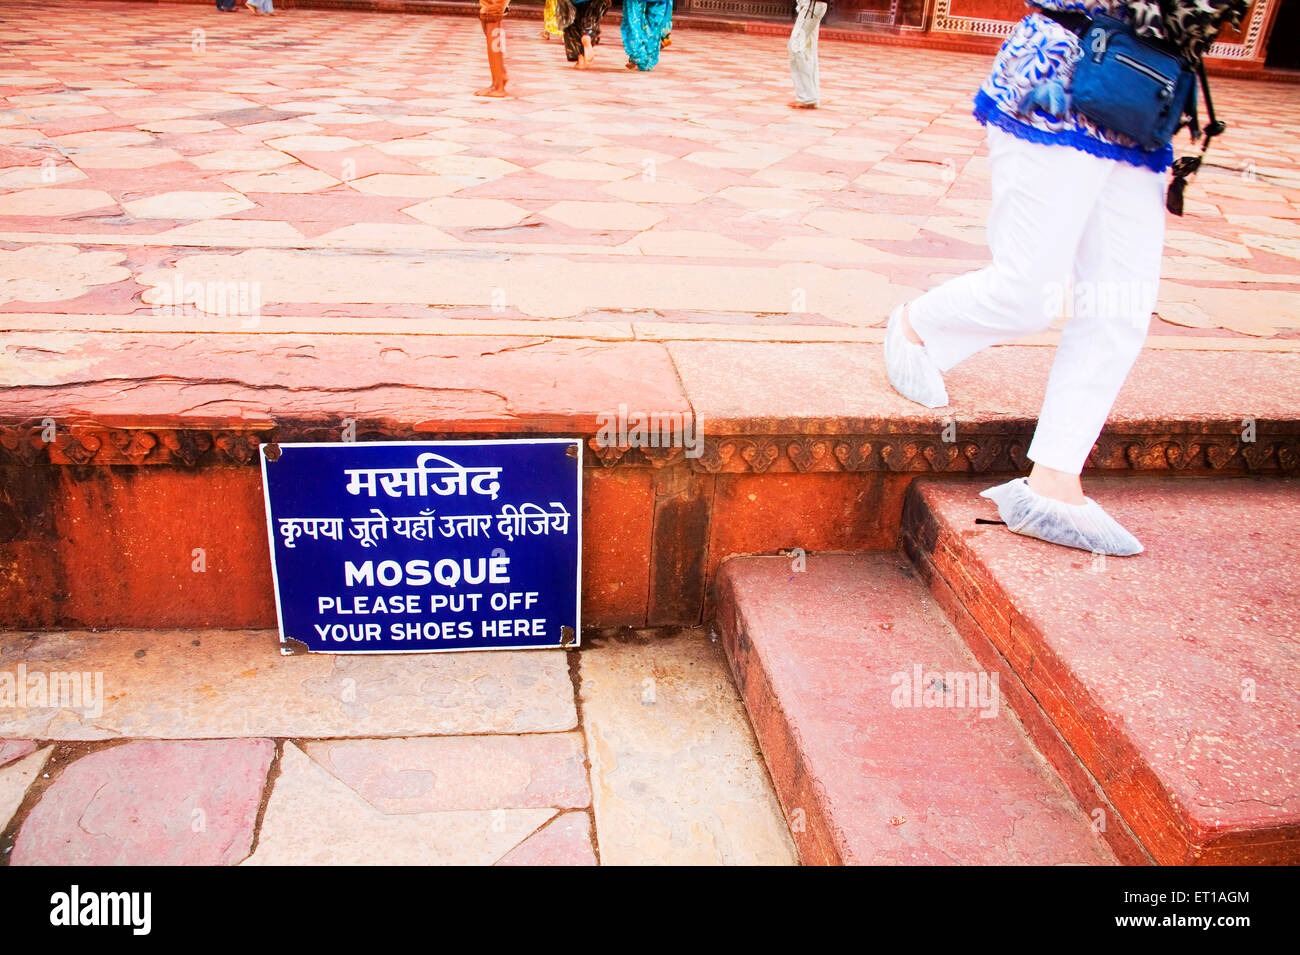 Tourist indossando coperchio bianco su le sue scarpe di camminare sulla sabbia rossa pietra vicino al segno bordo alla moschea , Taj Mahal , Agra , Uttar Pradesh , India Foto Stock